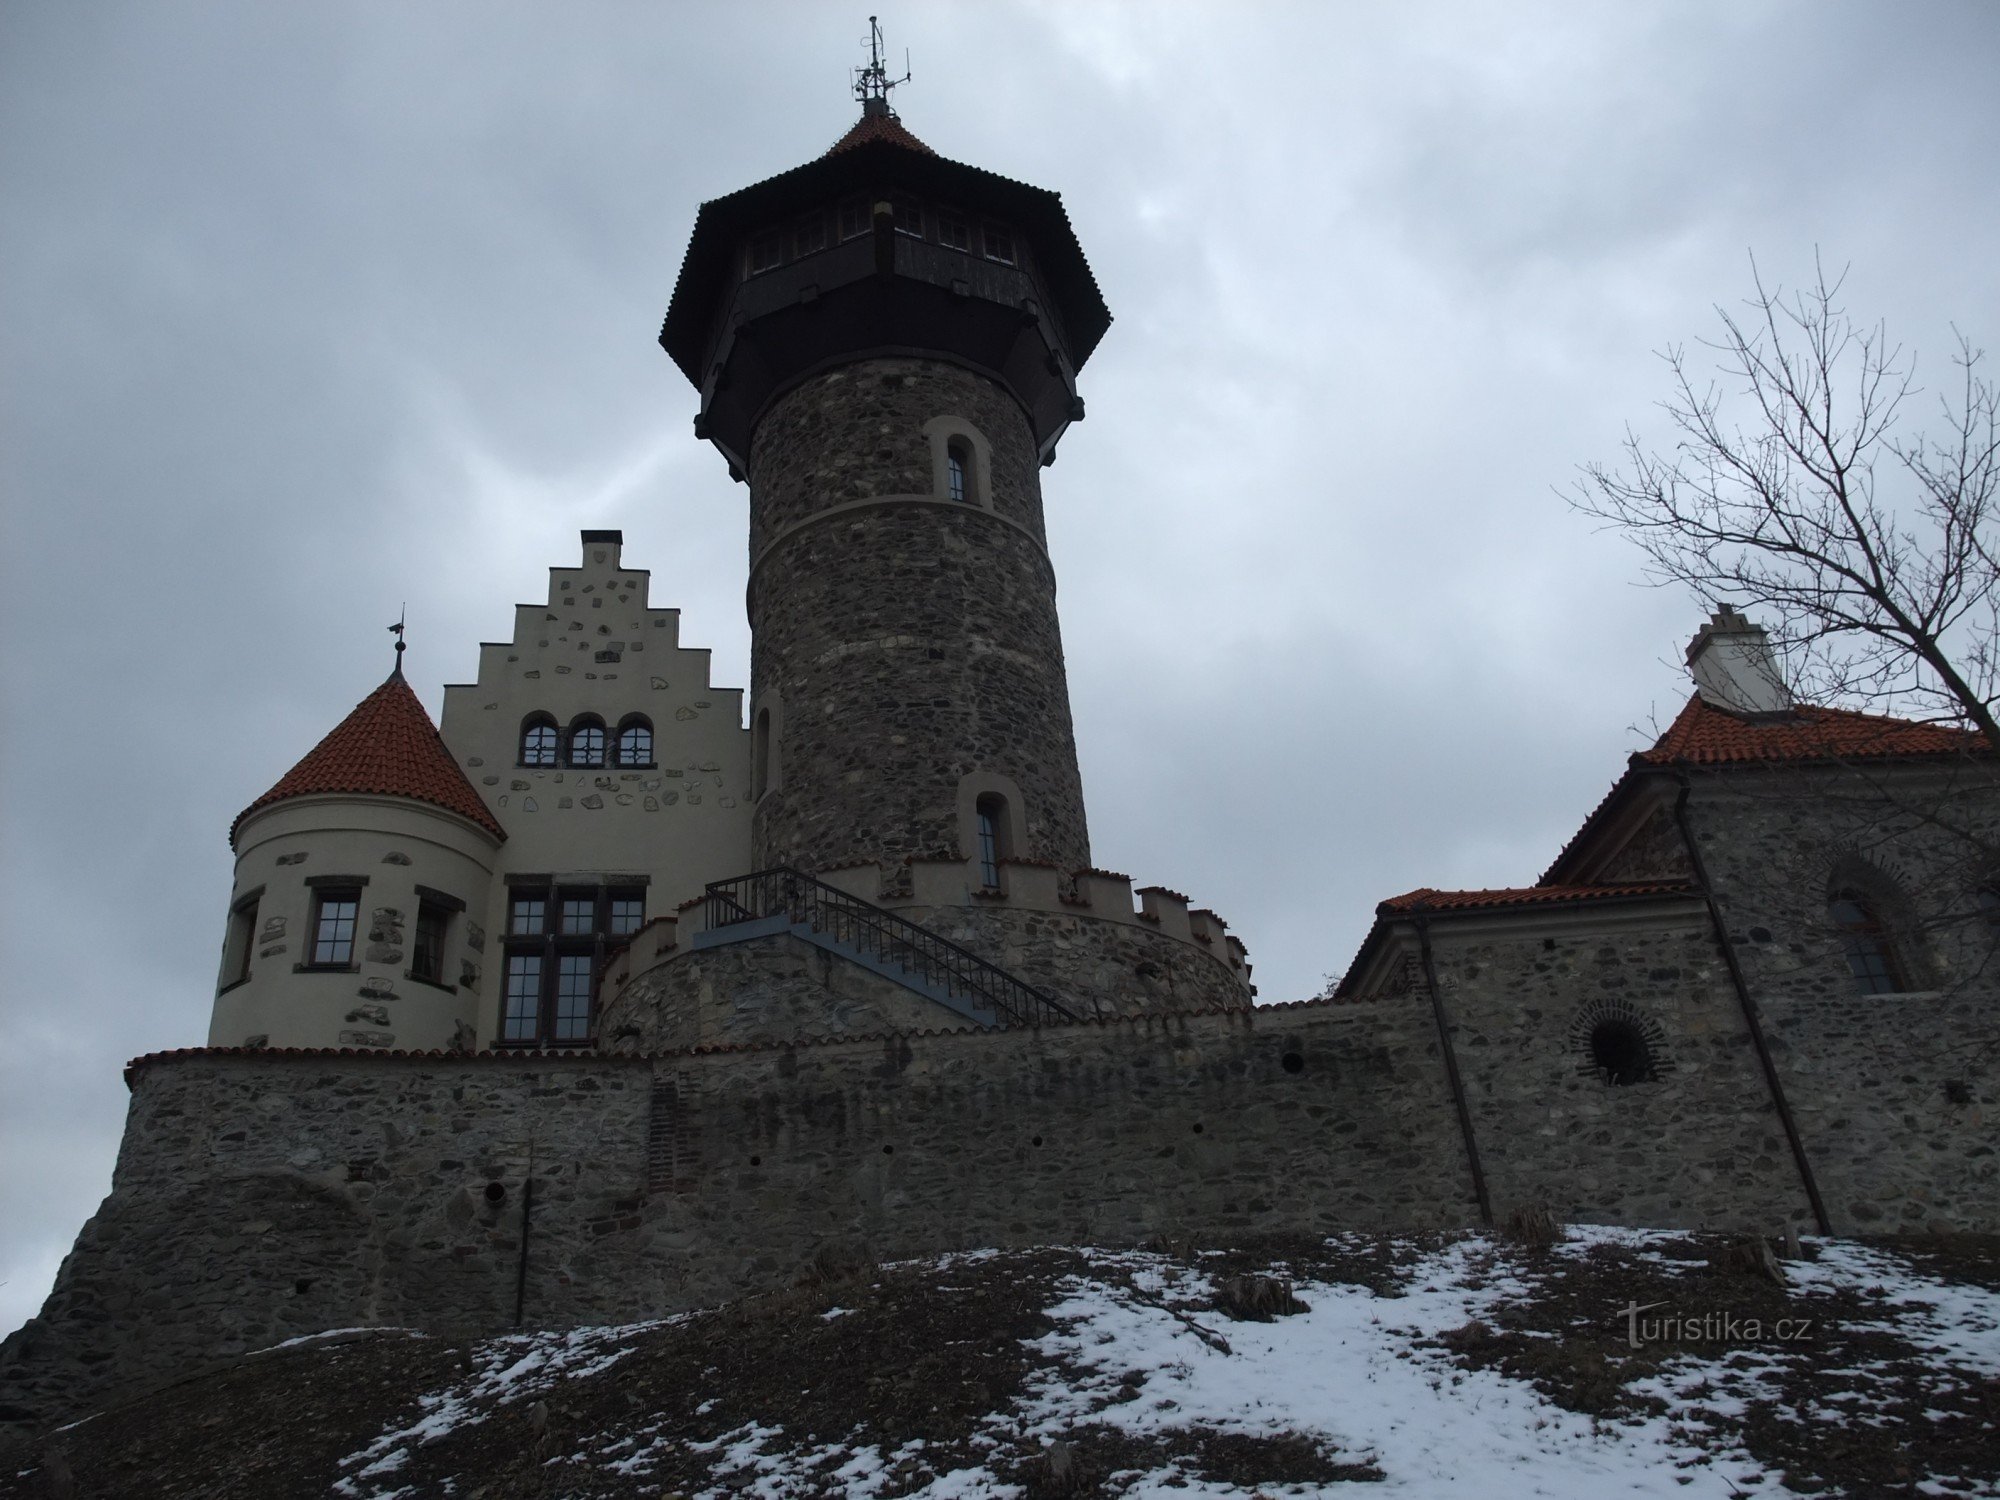 Thành phố của Hầu hết trong lòng bàn tay bạn - Lâu đài Hněvín